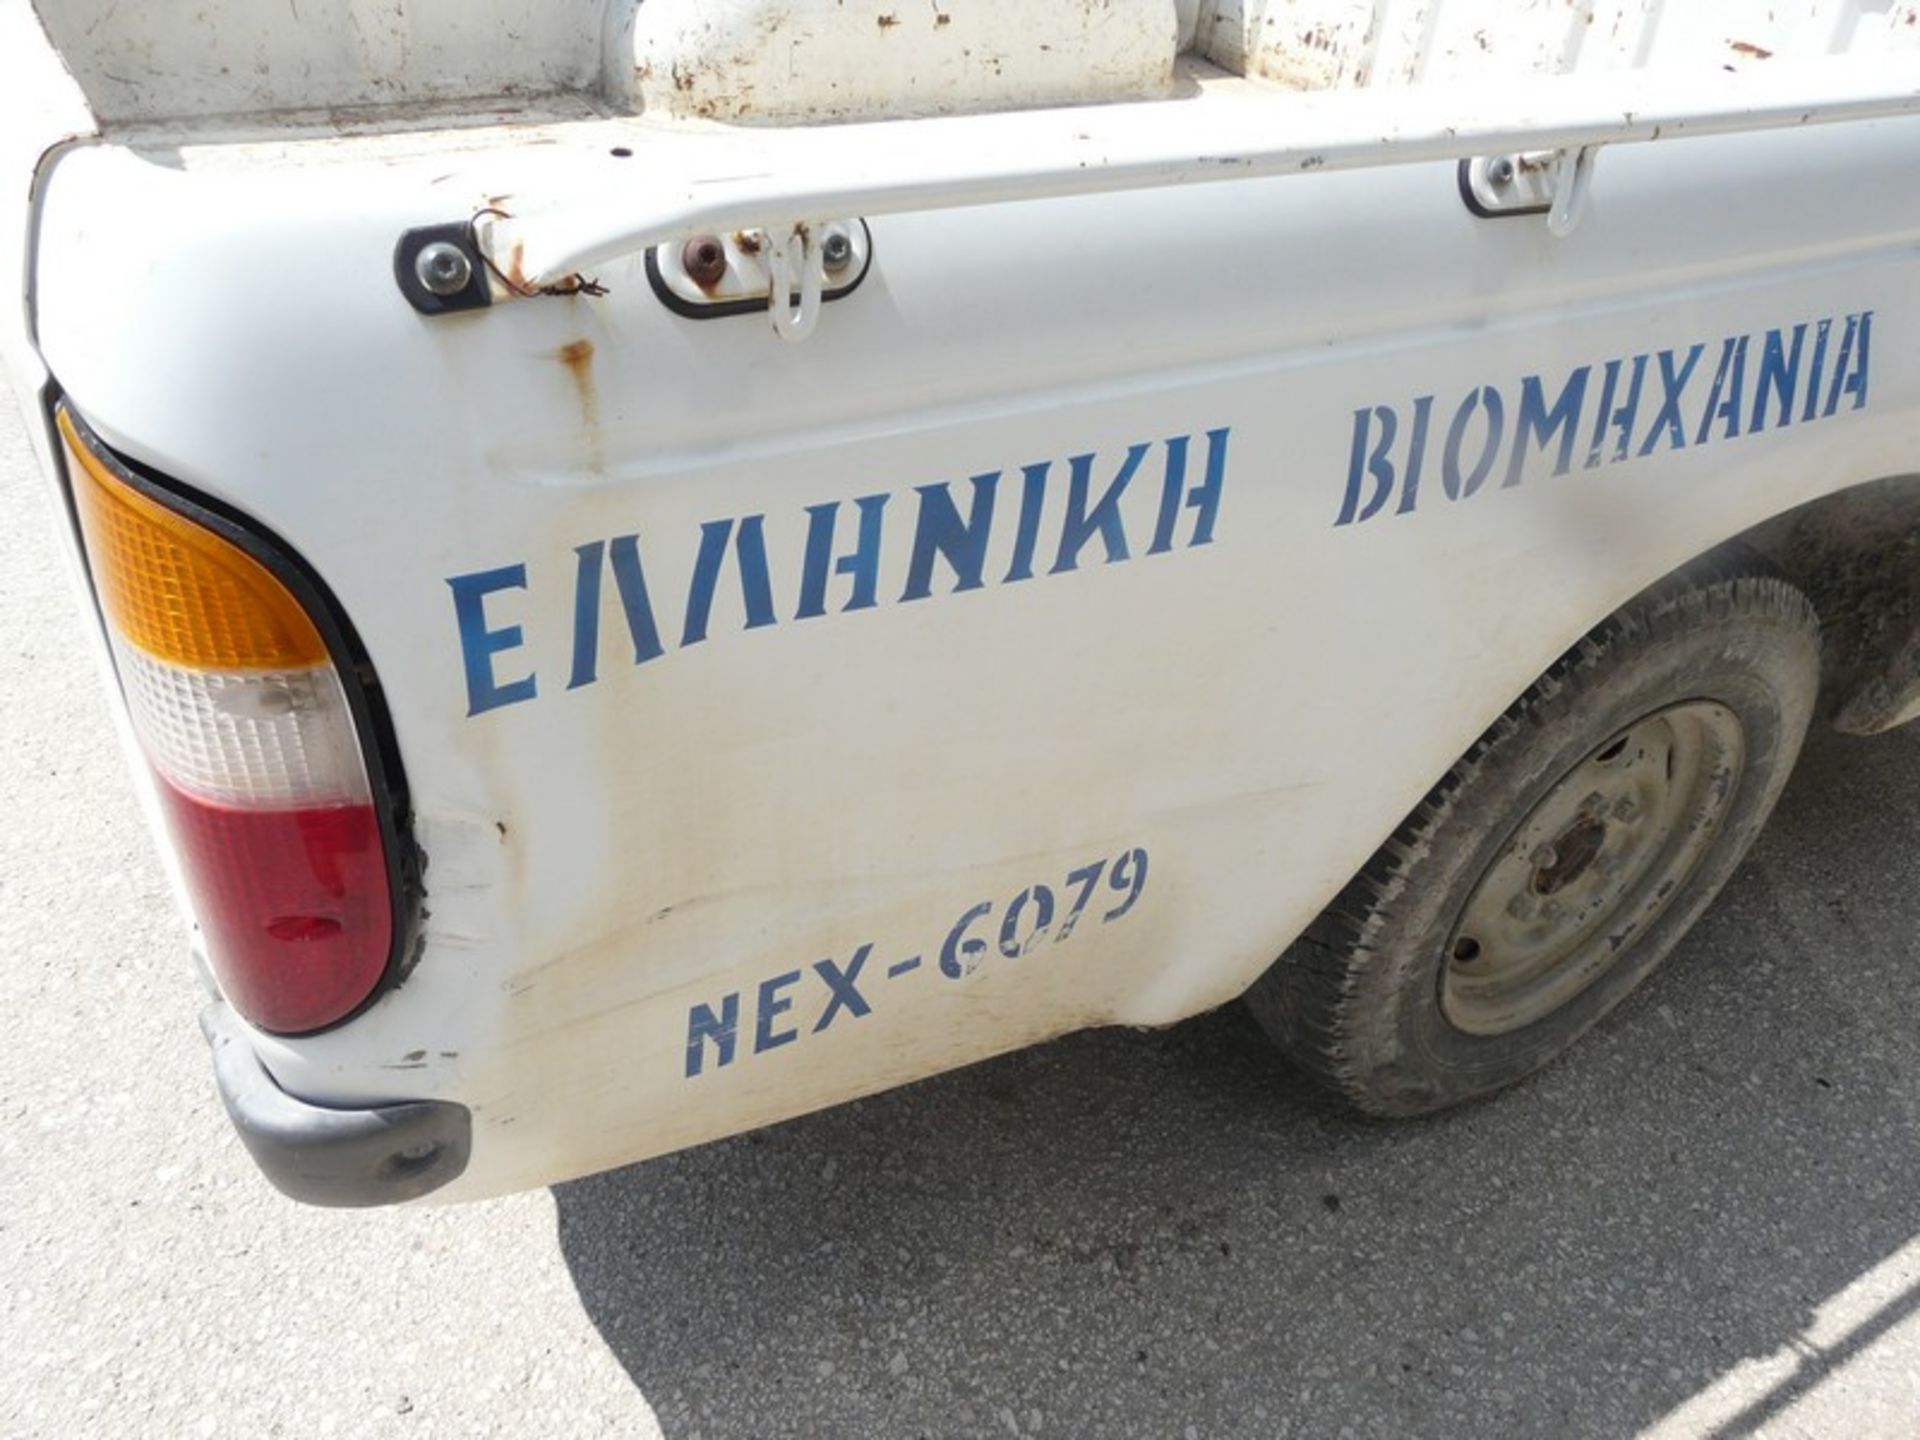 FORD RANGER SUPER CAB, DIESEL, REG: NEX 6079, KM: 204206, Year: 2001 (Located in Greece - Orestiada) - Bild 7 aus 8